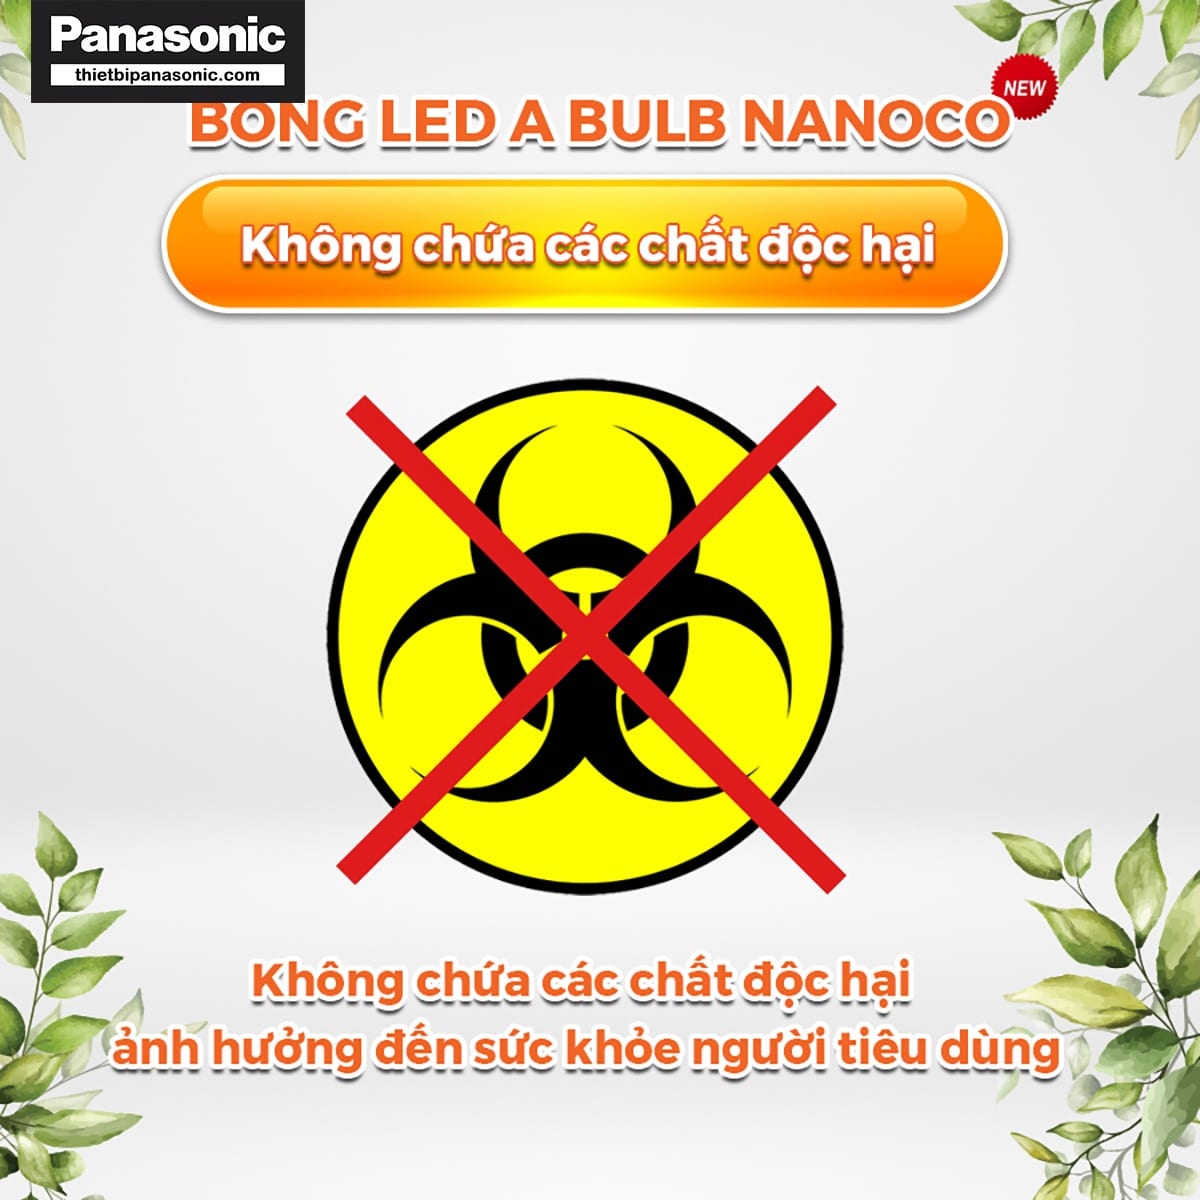 Bóng đèn bulb 30W Nanoco NLB306, NLB304, NLB303 không chứa các chất độc hại ảnh hưởng xấu tới sức khỏe